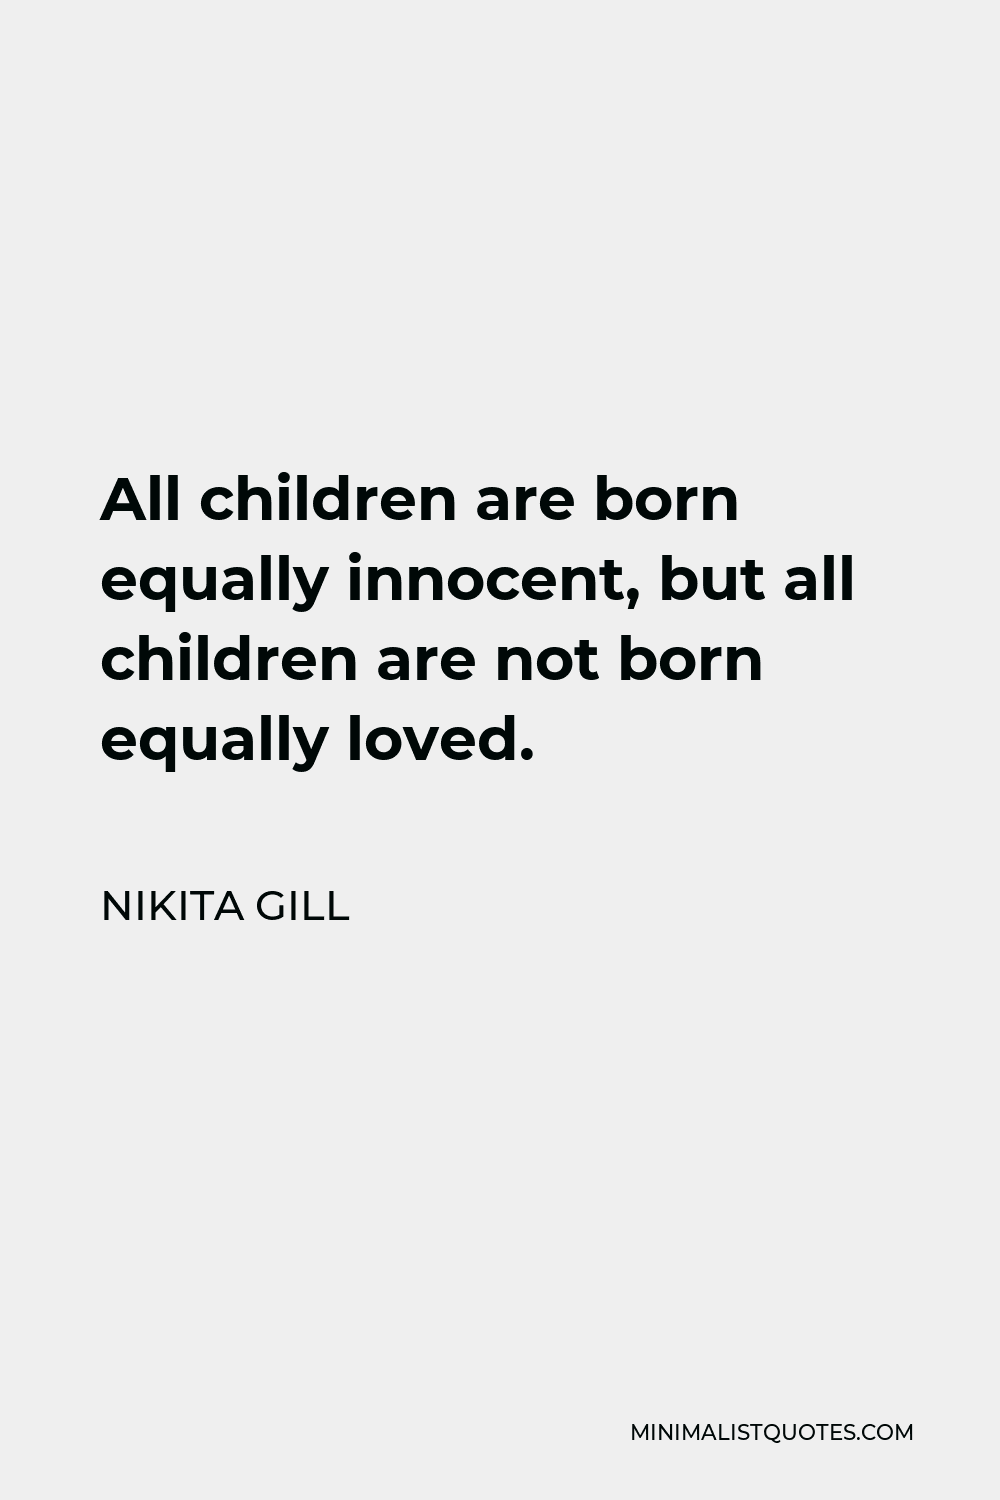 Nikita Gill Quote - All children are born equally innocent, but all children are not born equally loved.